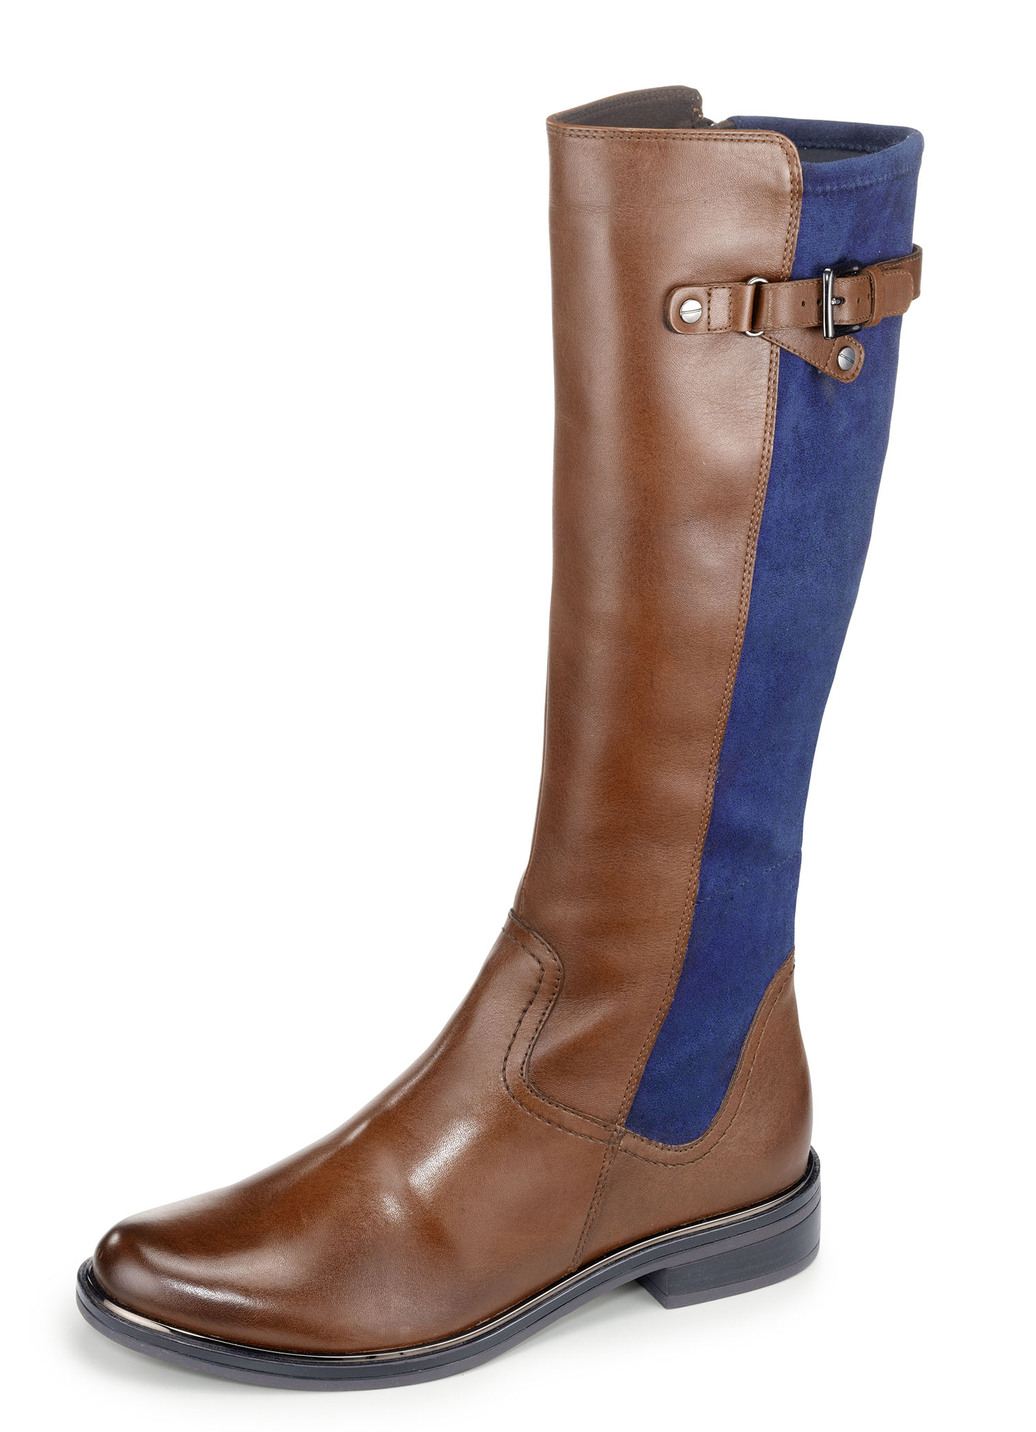 Caprice Stiefel aus edlem Nappaleder und elastischem Textilmaterial, Schuhgröße 3 1/2, Cognac-Marine von Caprice